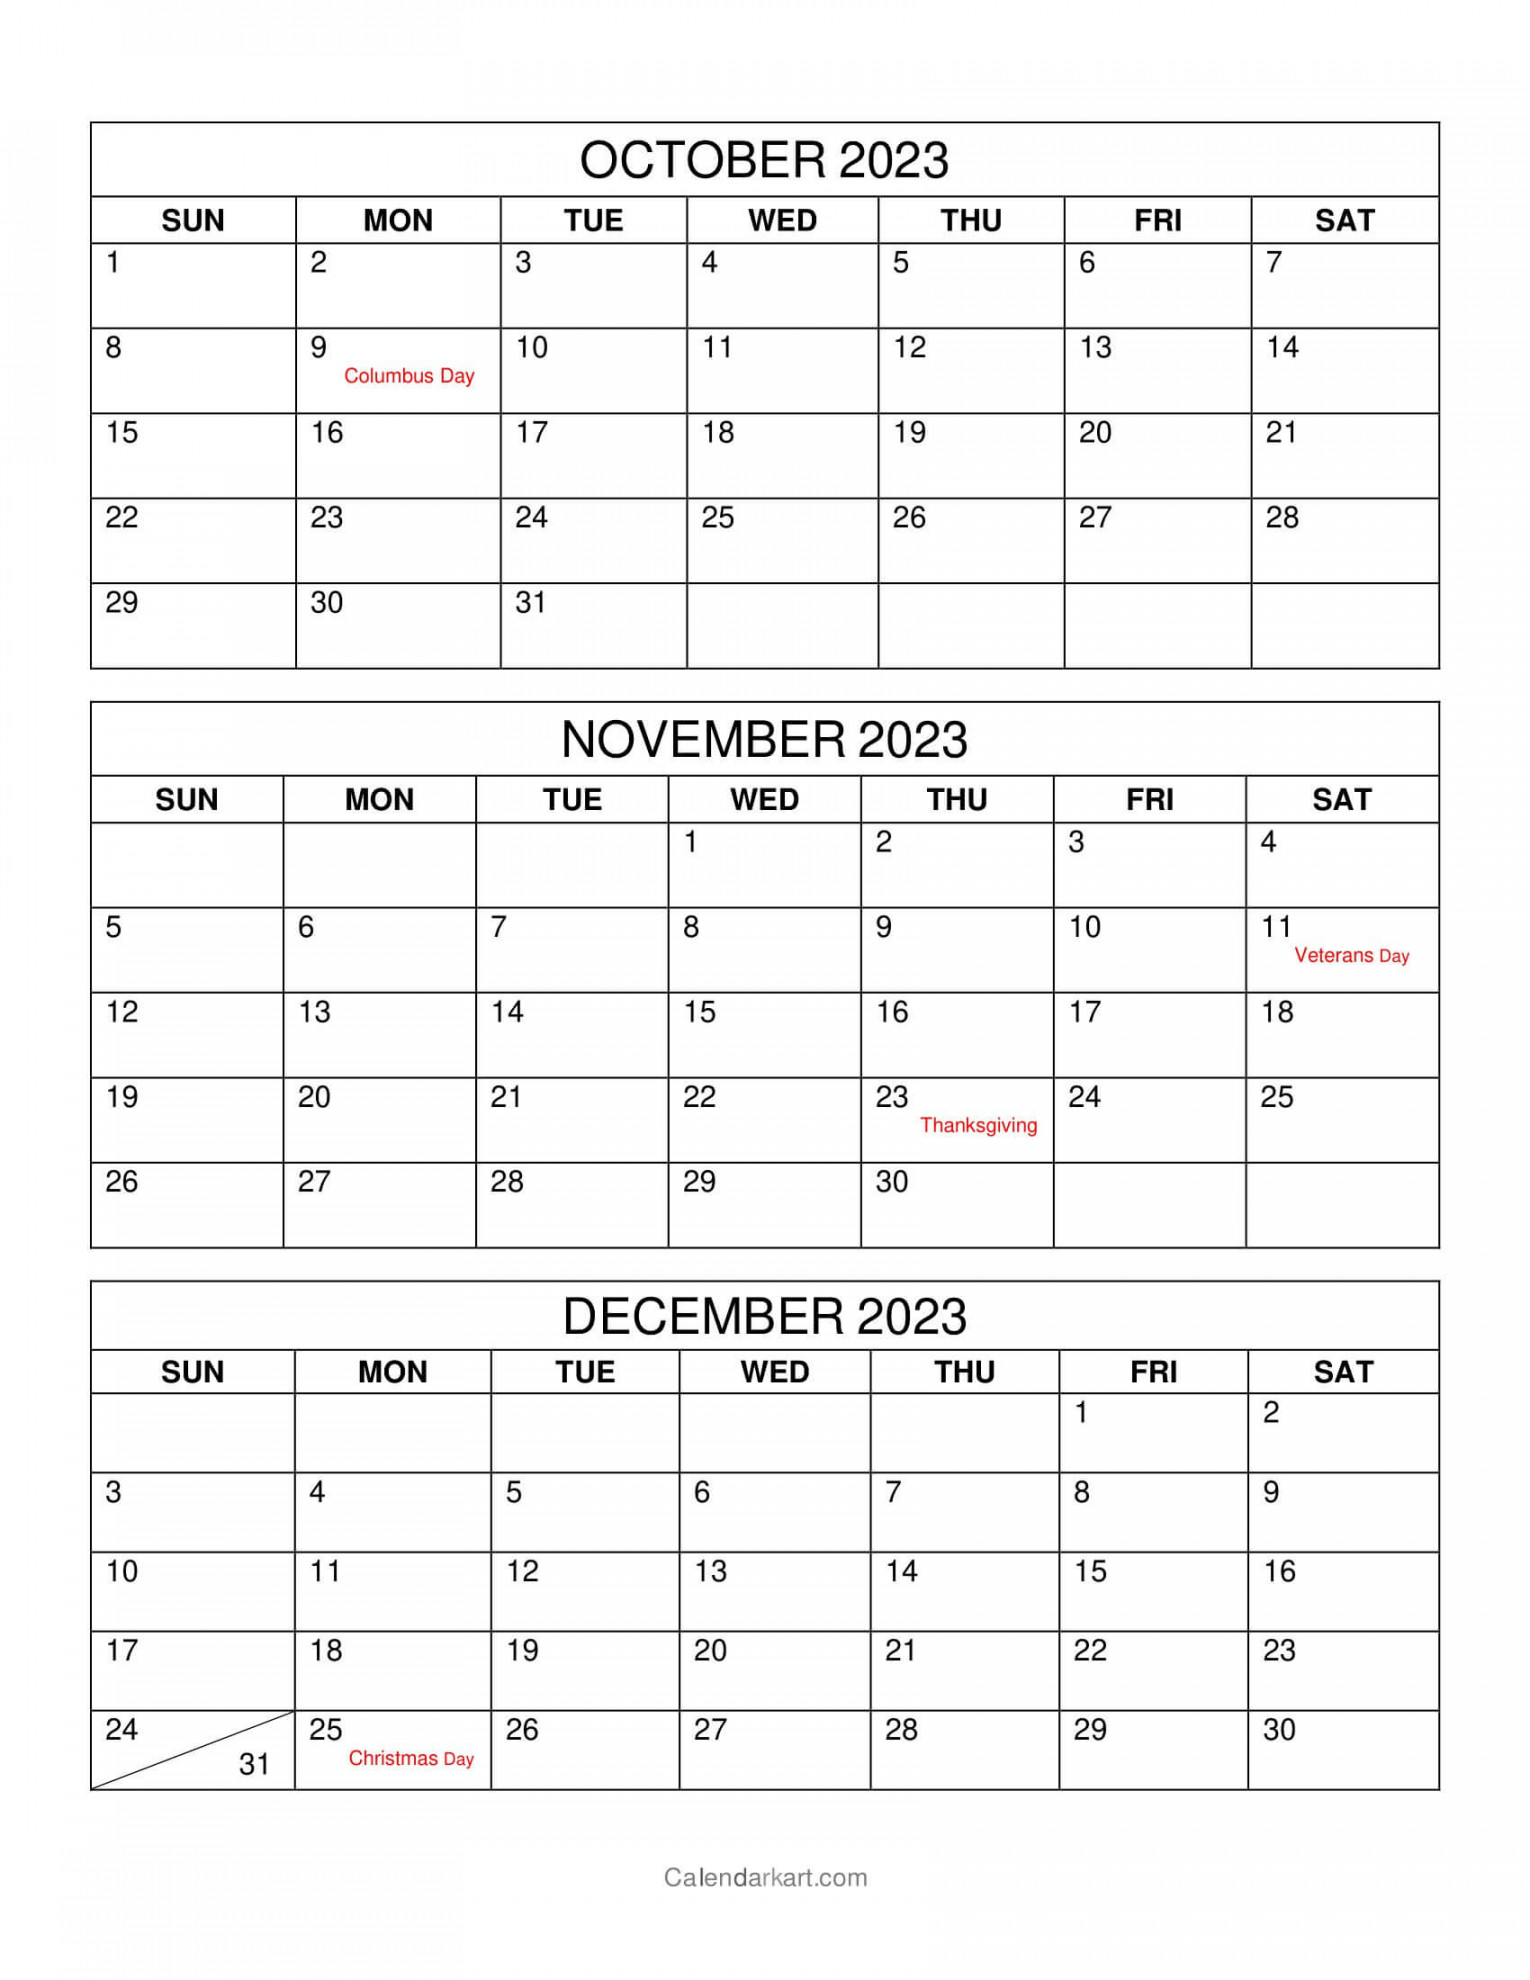 October to December  Calendar (Q) - CalendarKart